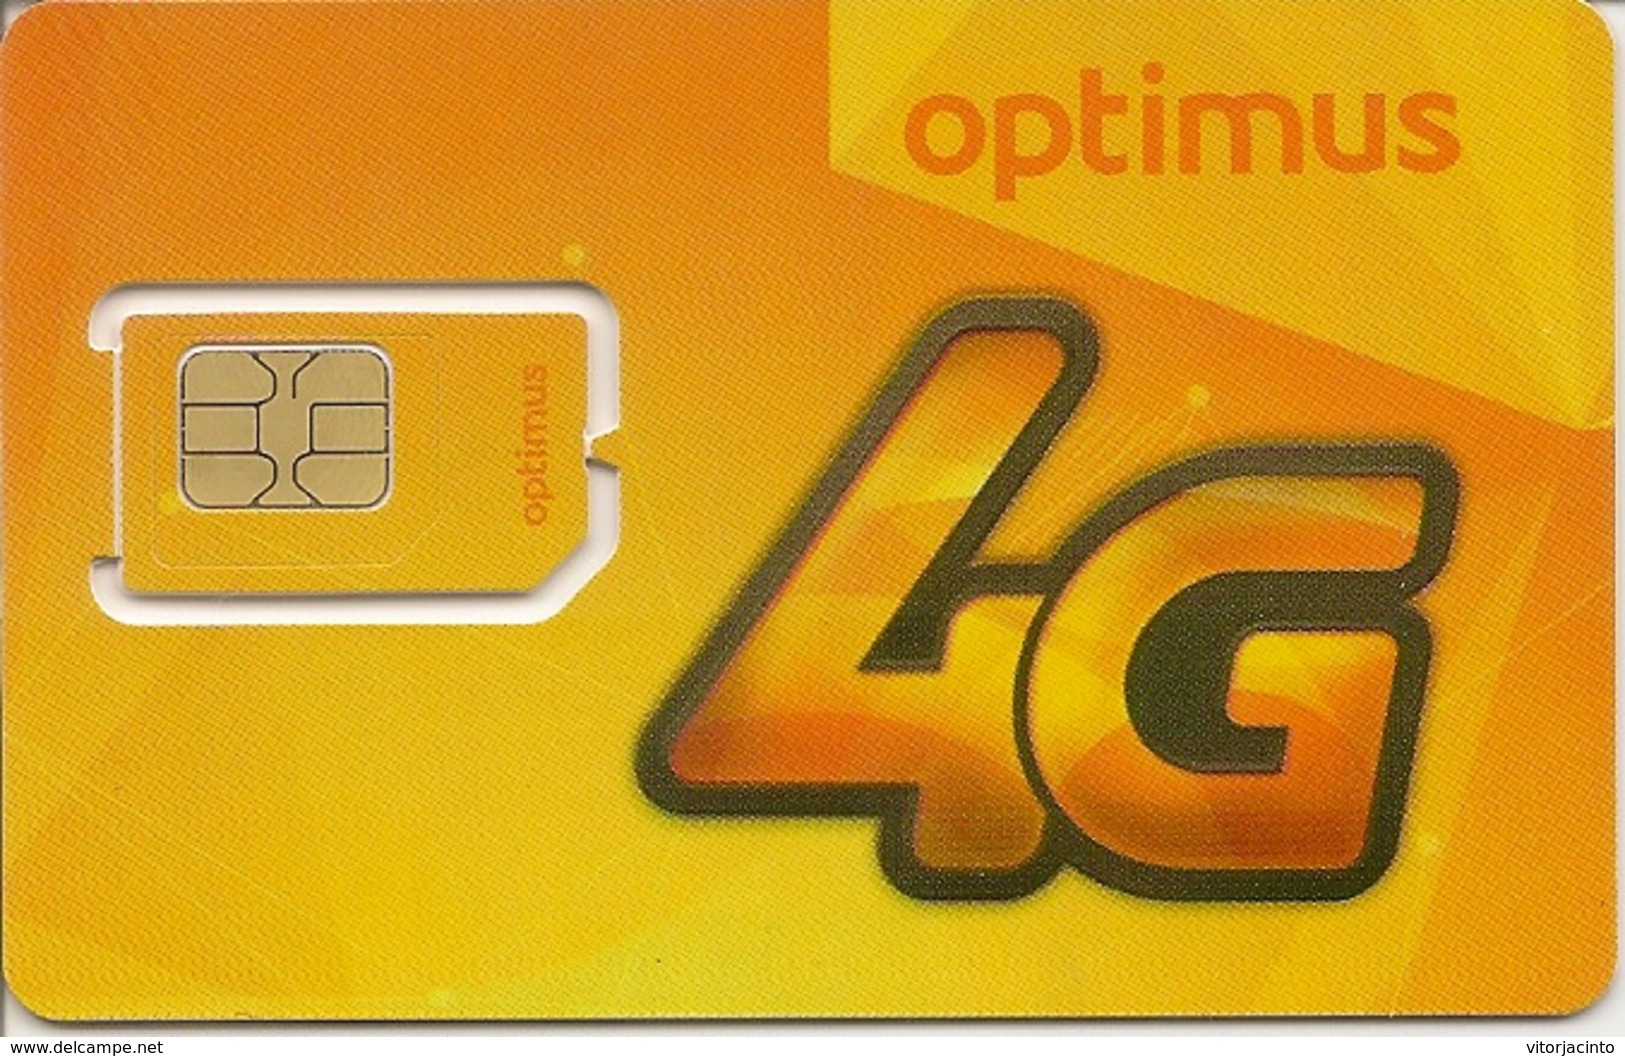 Optimus SimCard 4G - Portugal - Portugal